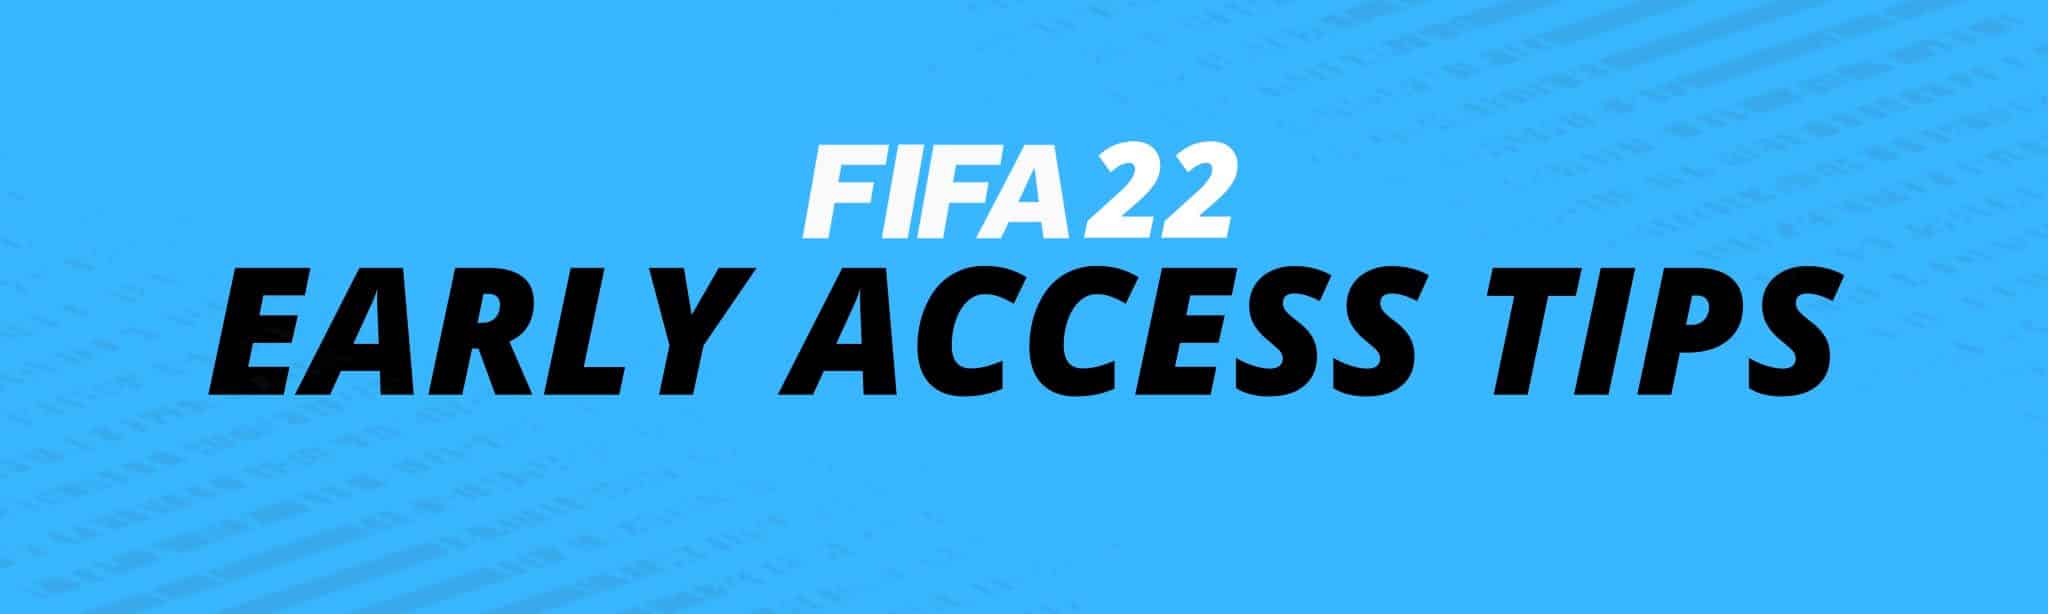 FIFA 22 EARLY ACCESS TIPS EA PLAY